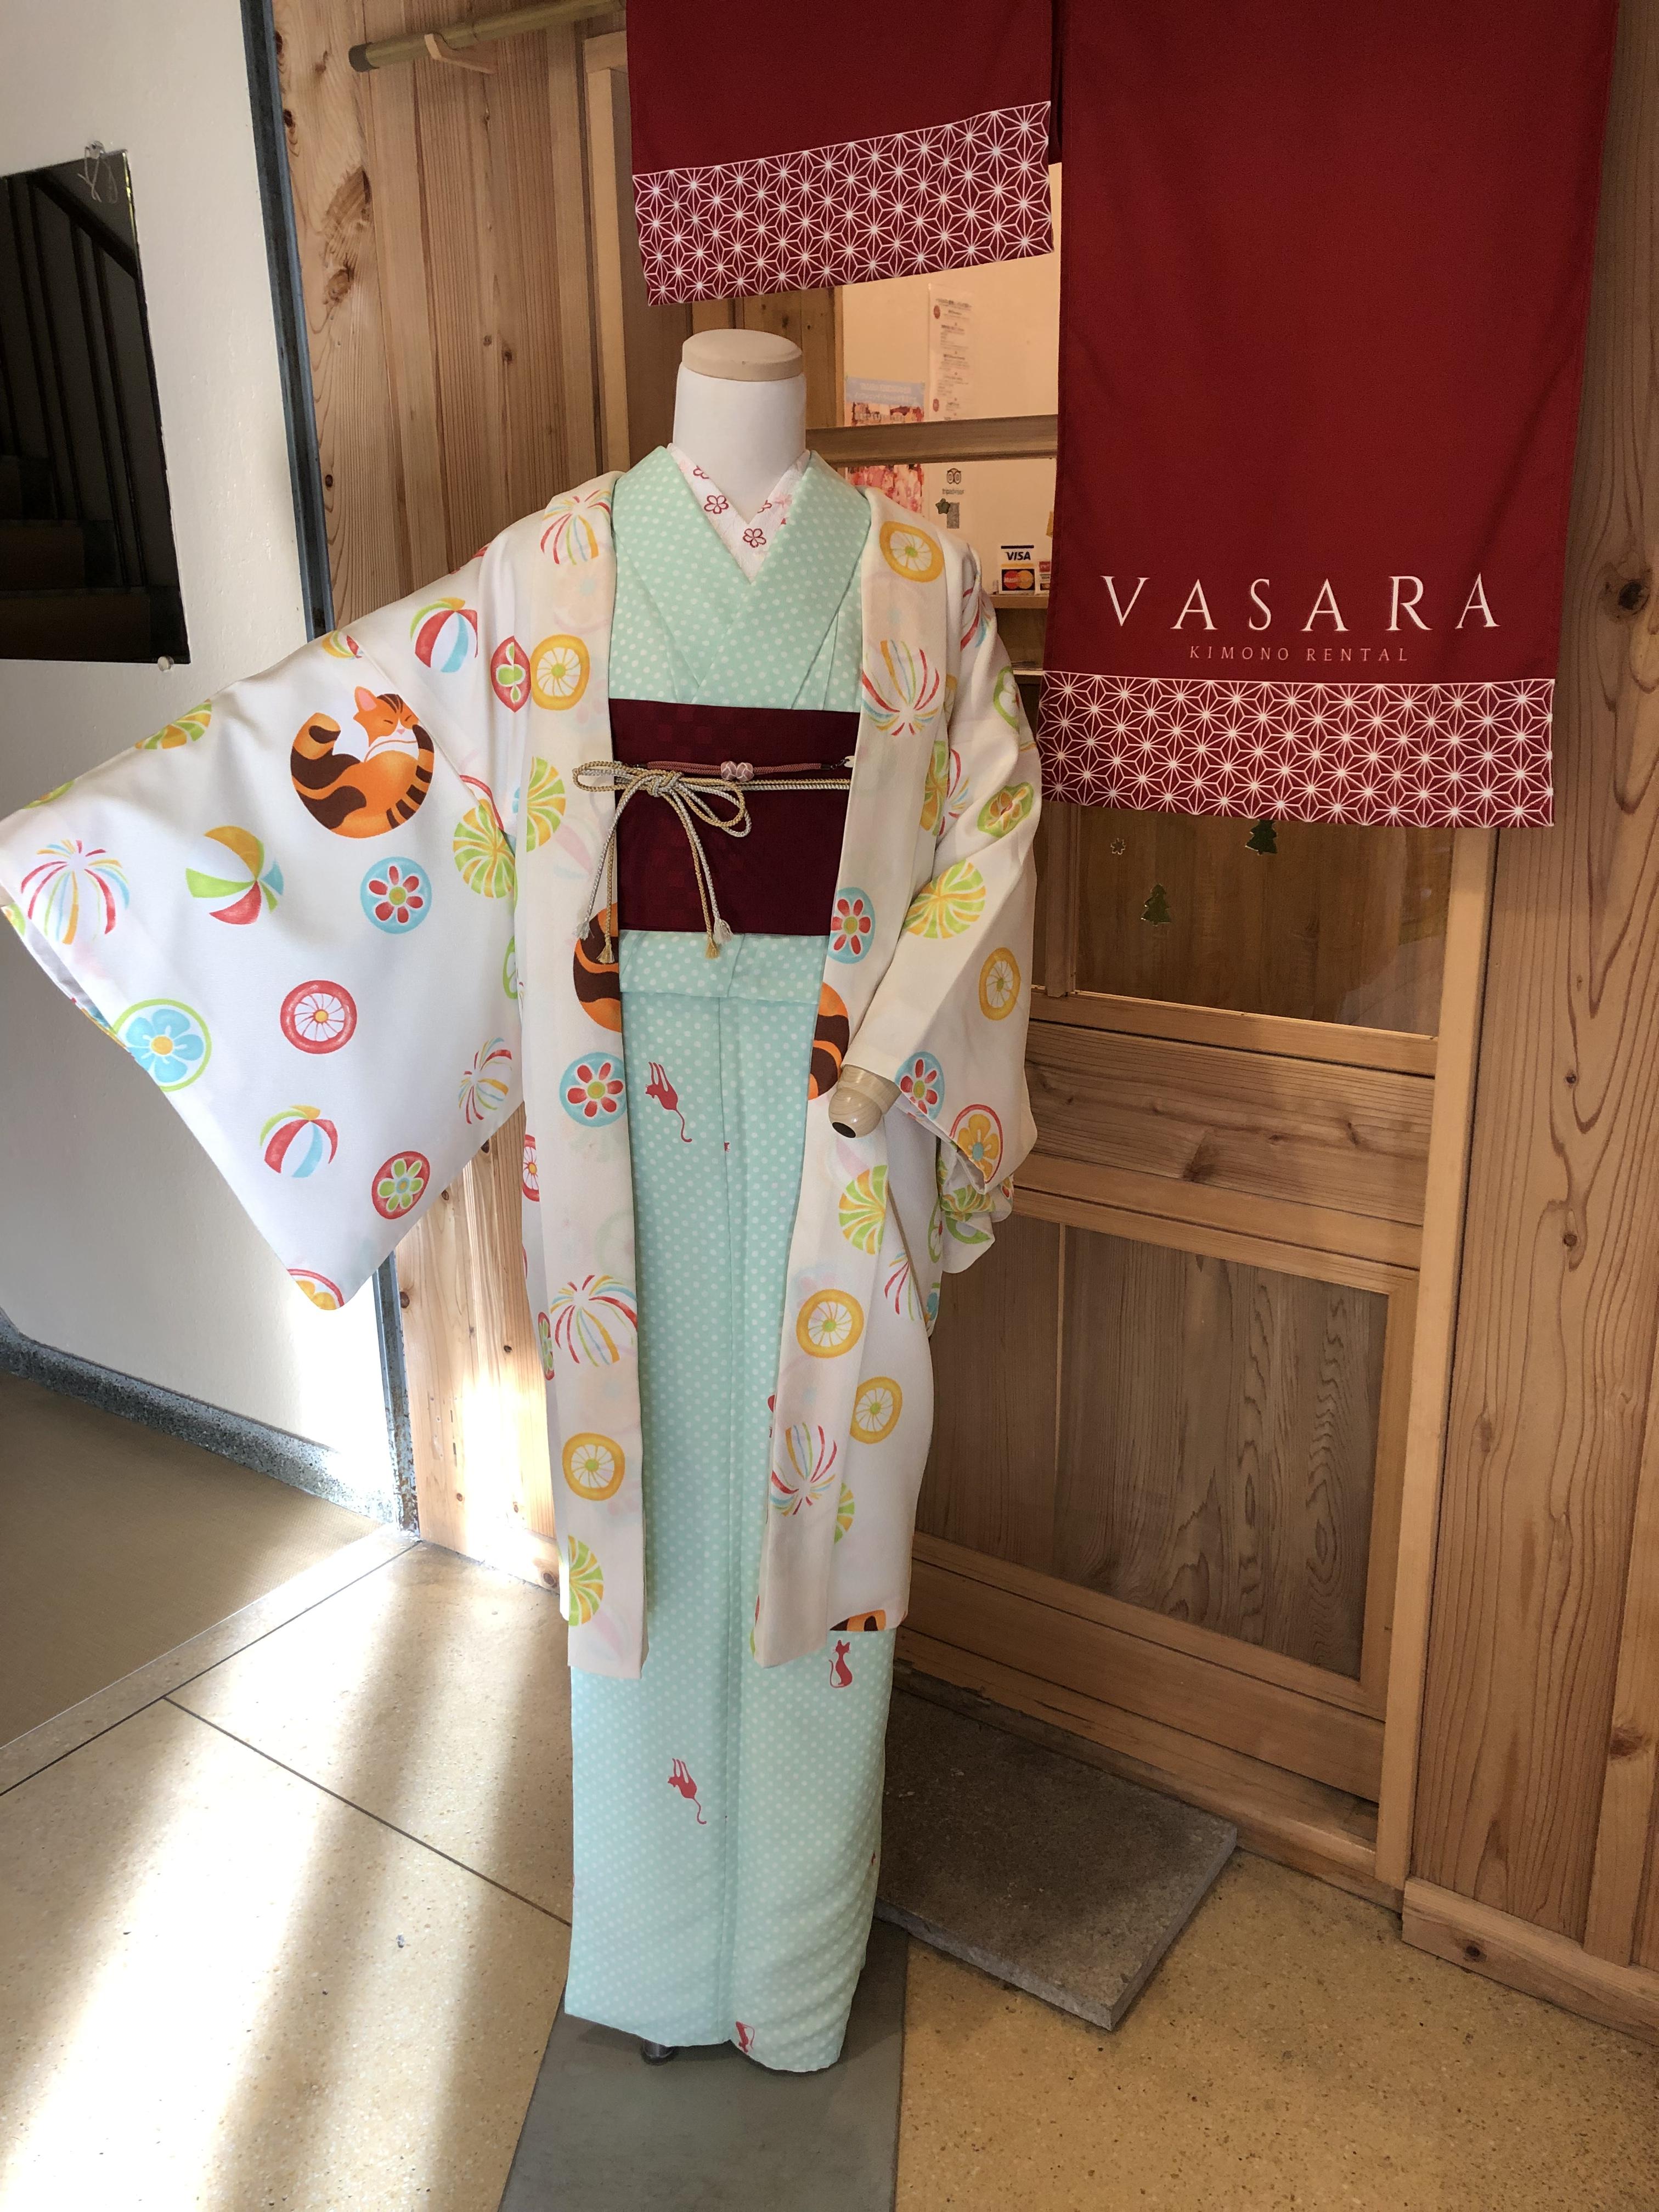 Shop Topics 冬のあたたかアイテムご紹介 伊勢神宮で着物 浴衣を楽しむなら 着物レンタルvasara